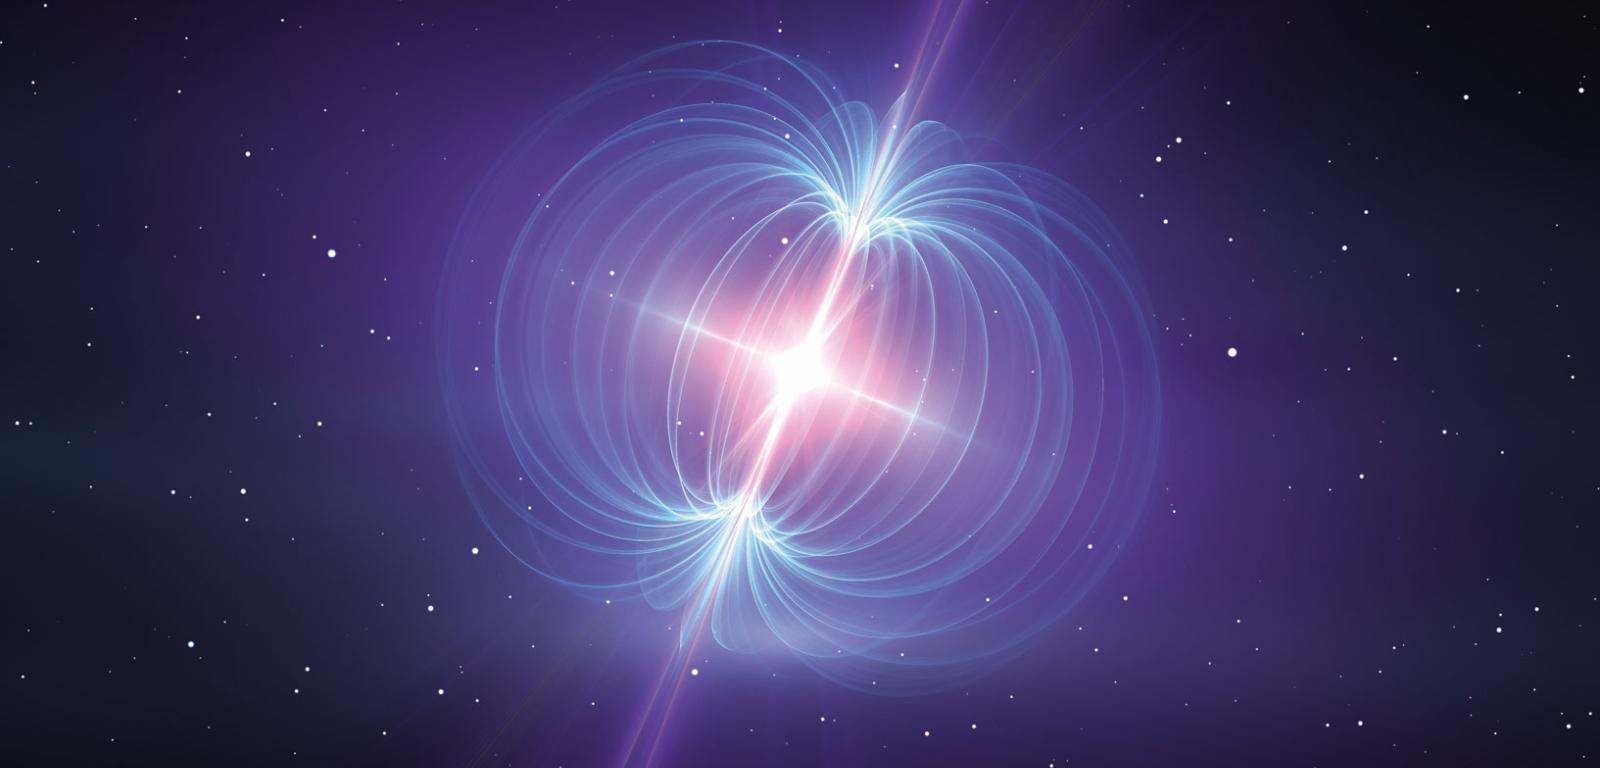 W trakcie trwającego 0,1 s rozbłysku magnetar uwolnił energię zbliżoną do tej, którą Słońce emituje w ciągu 100 tys. lat.